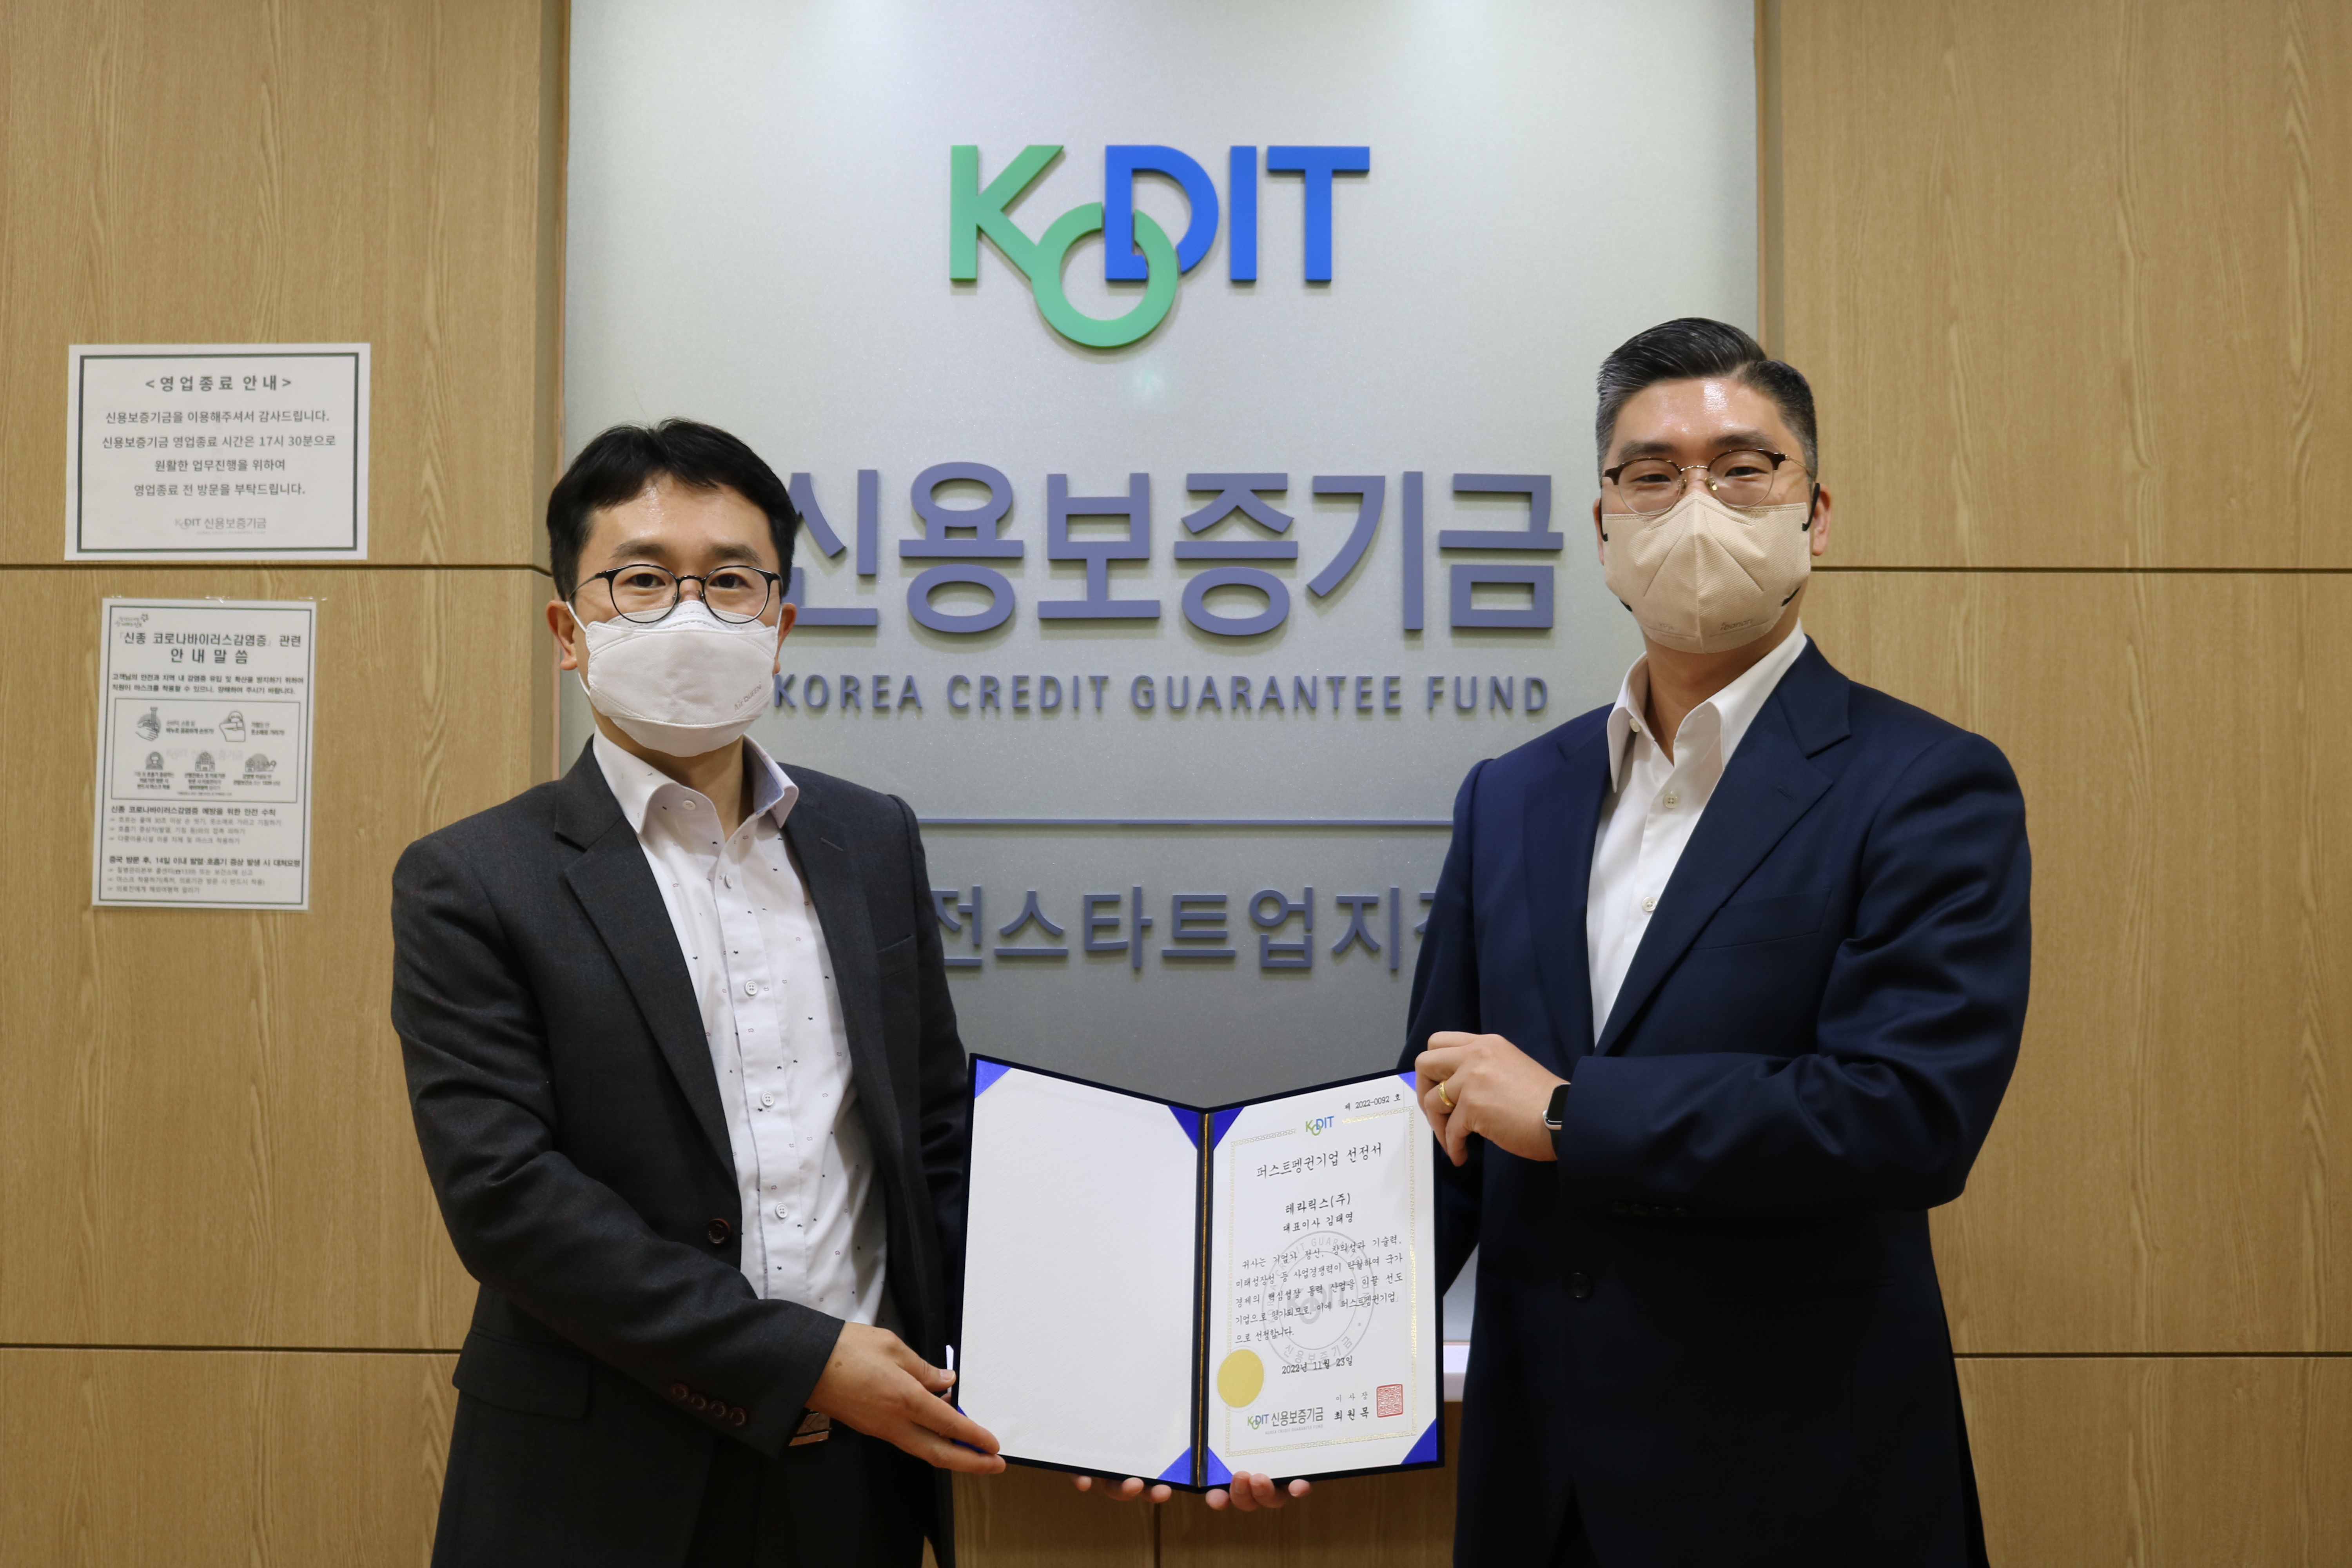 [2022.11.23] 신용보증기금 퍼스트펭귄 기업 선정 (Selected as 'First Penguin Company' by Korea Credit Guarantee Fund)